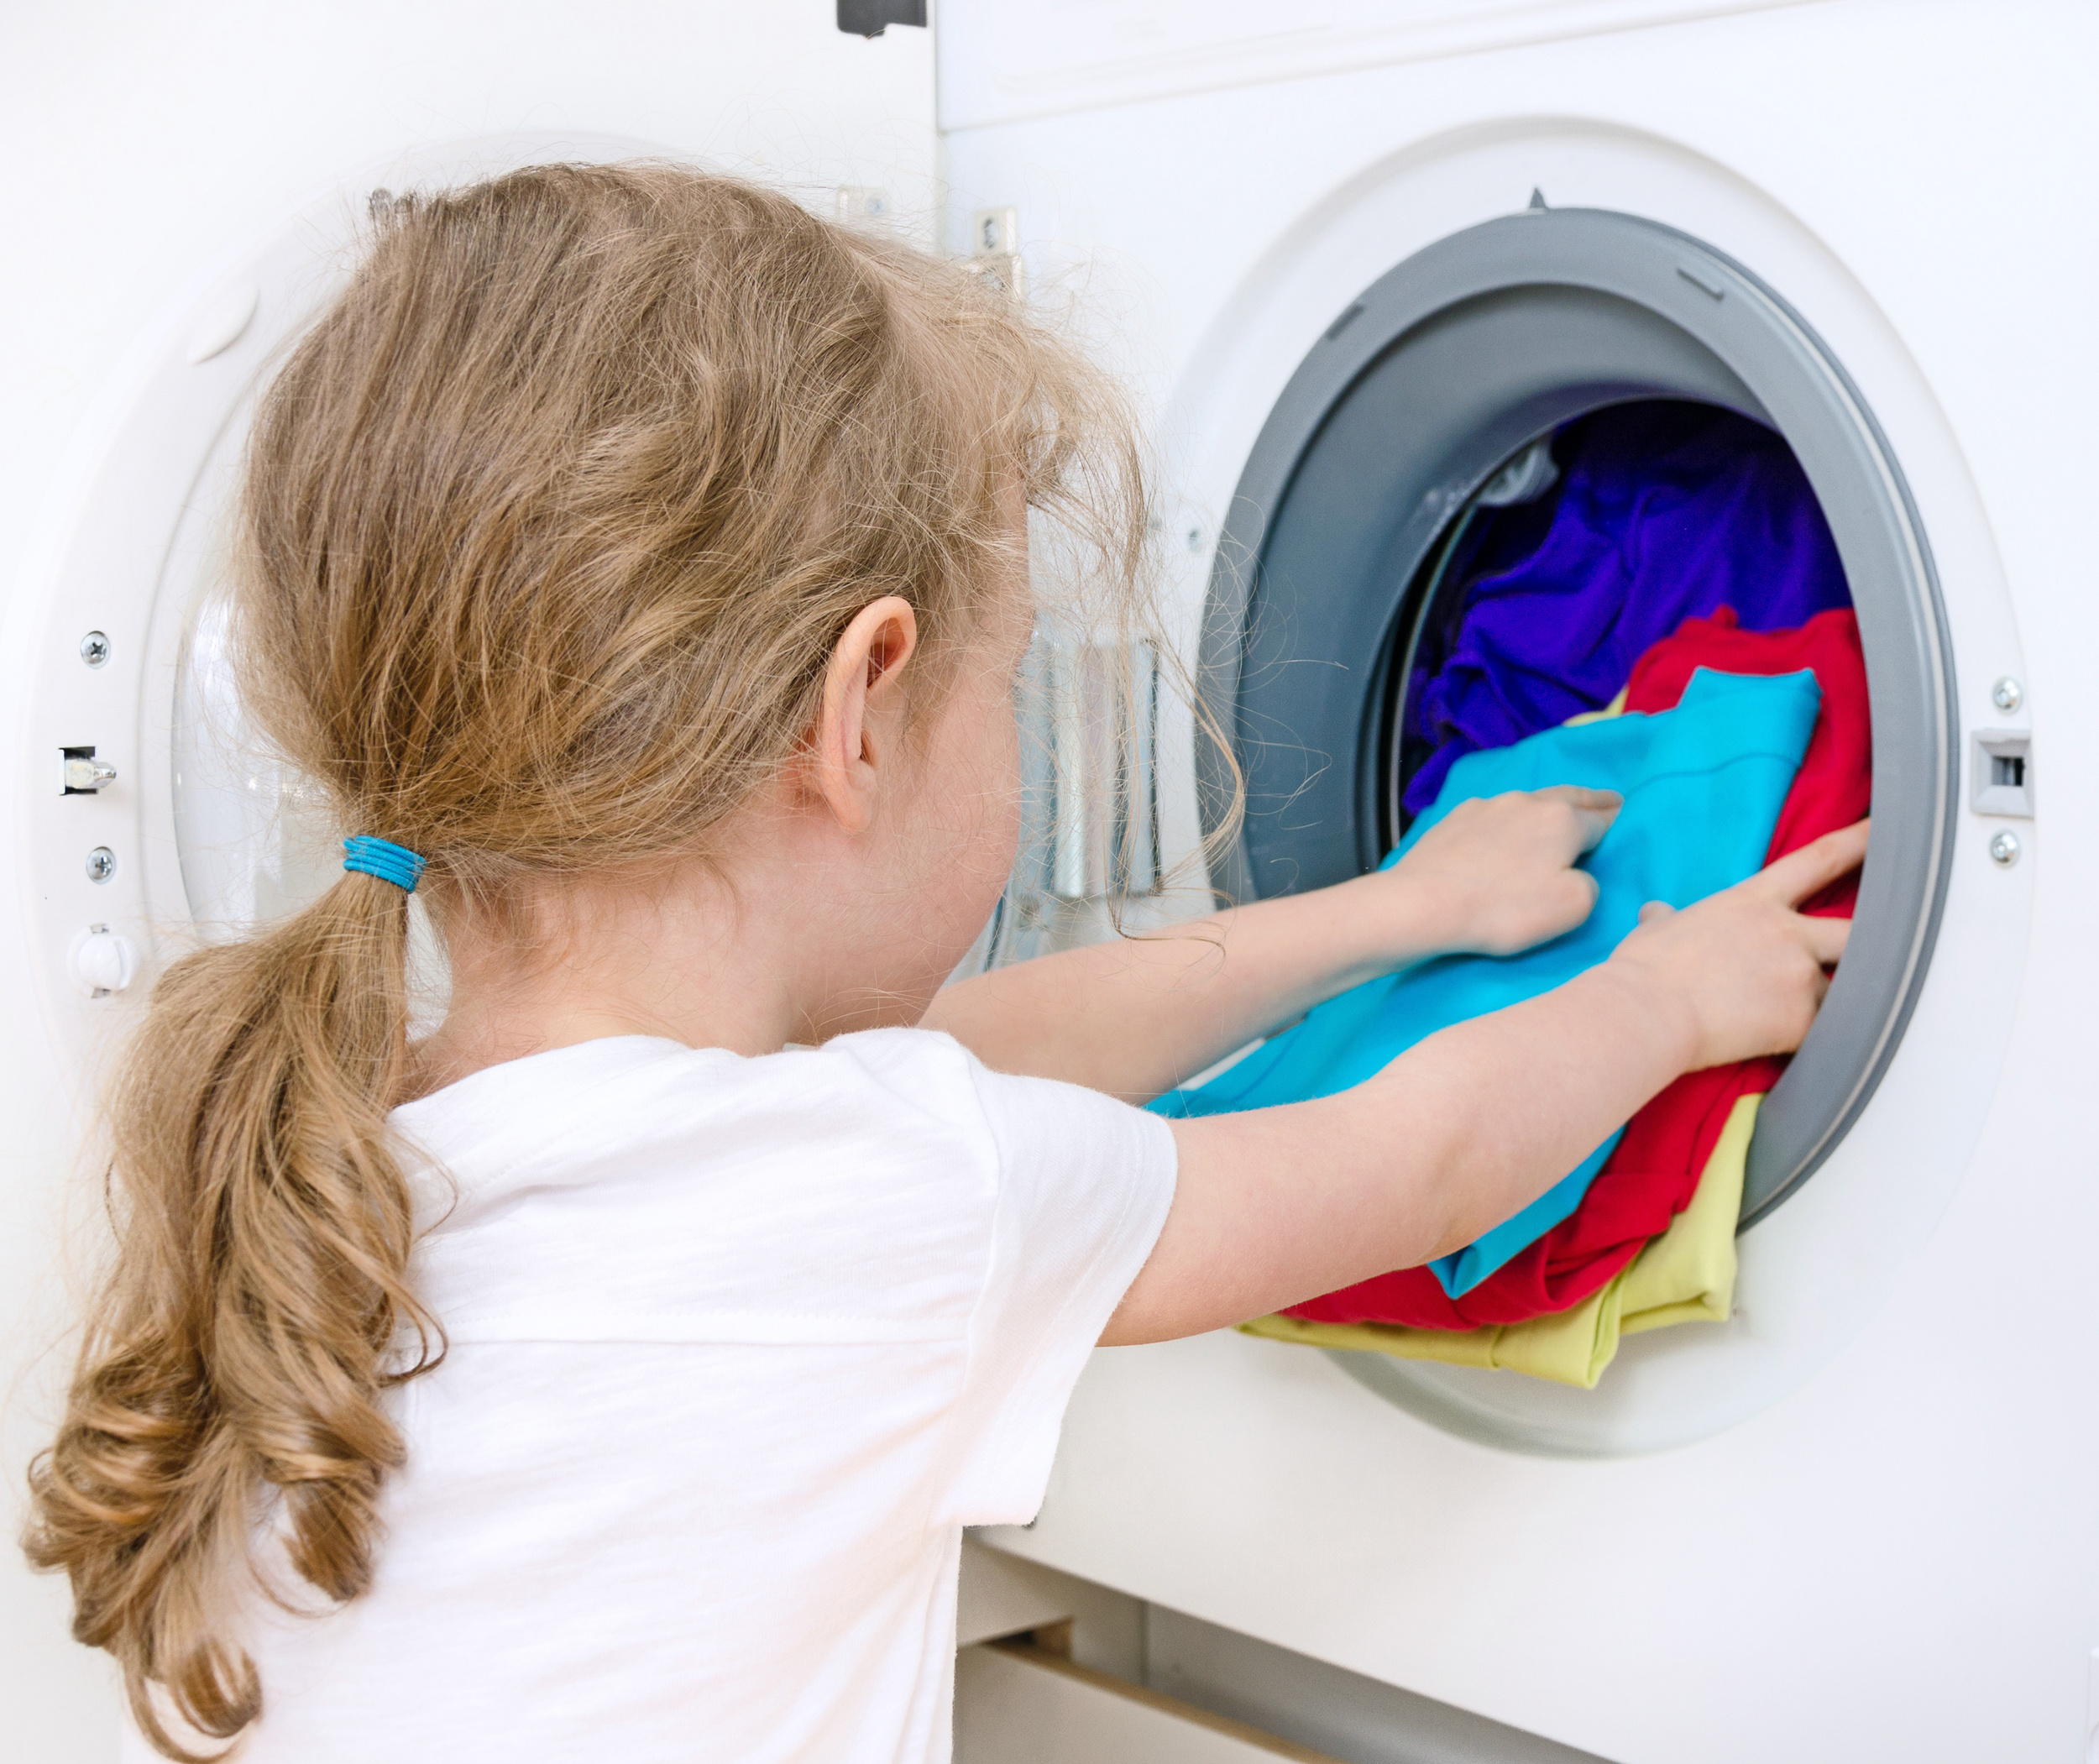 Enfants: quel type de tâche ménagère pour quel âge?